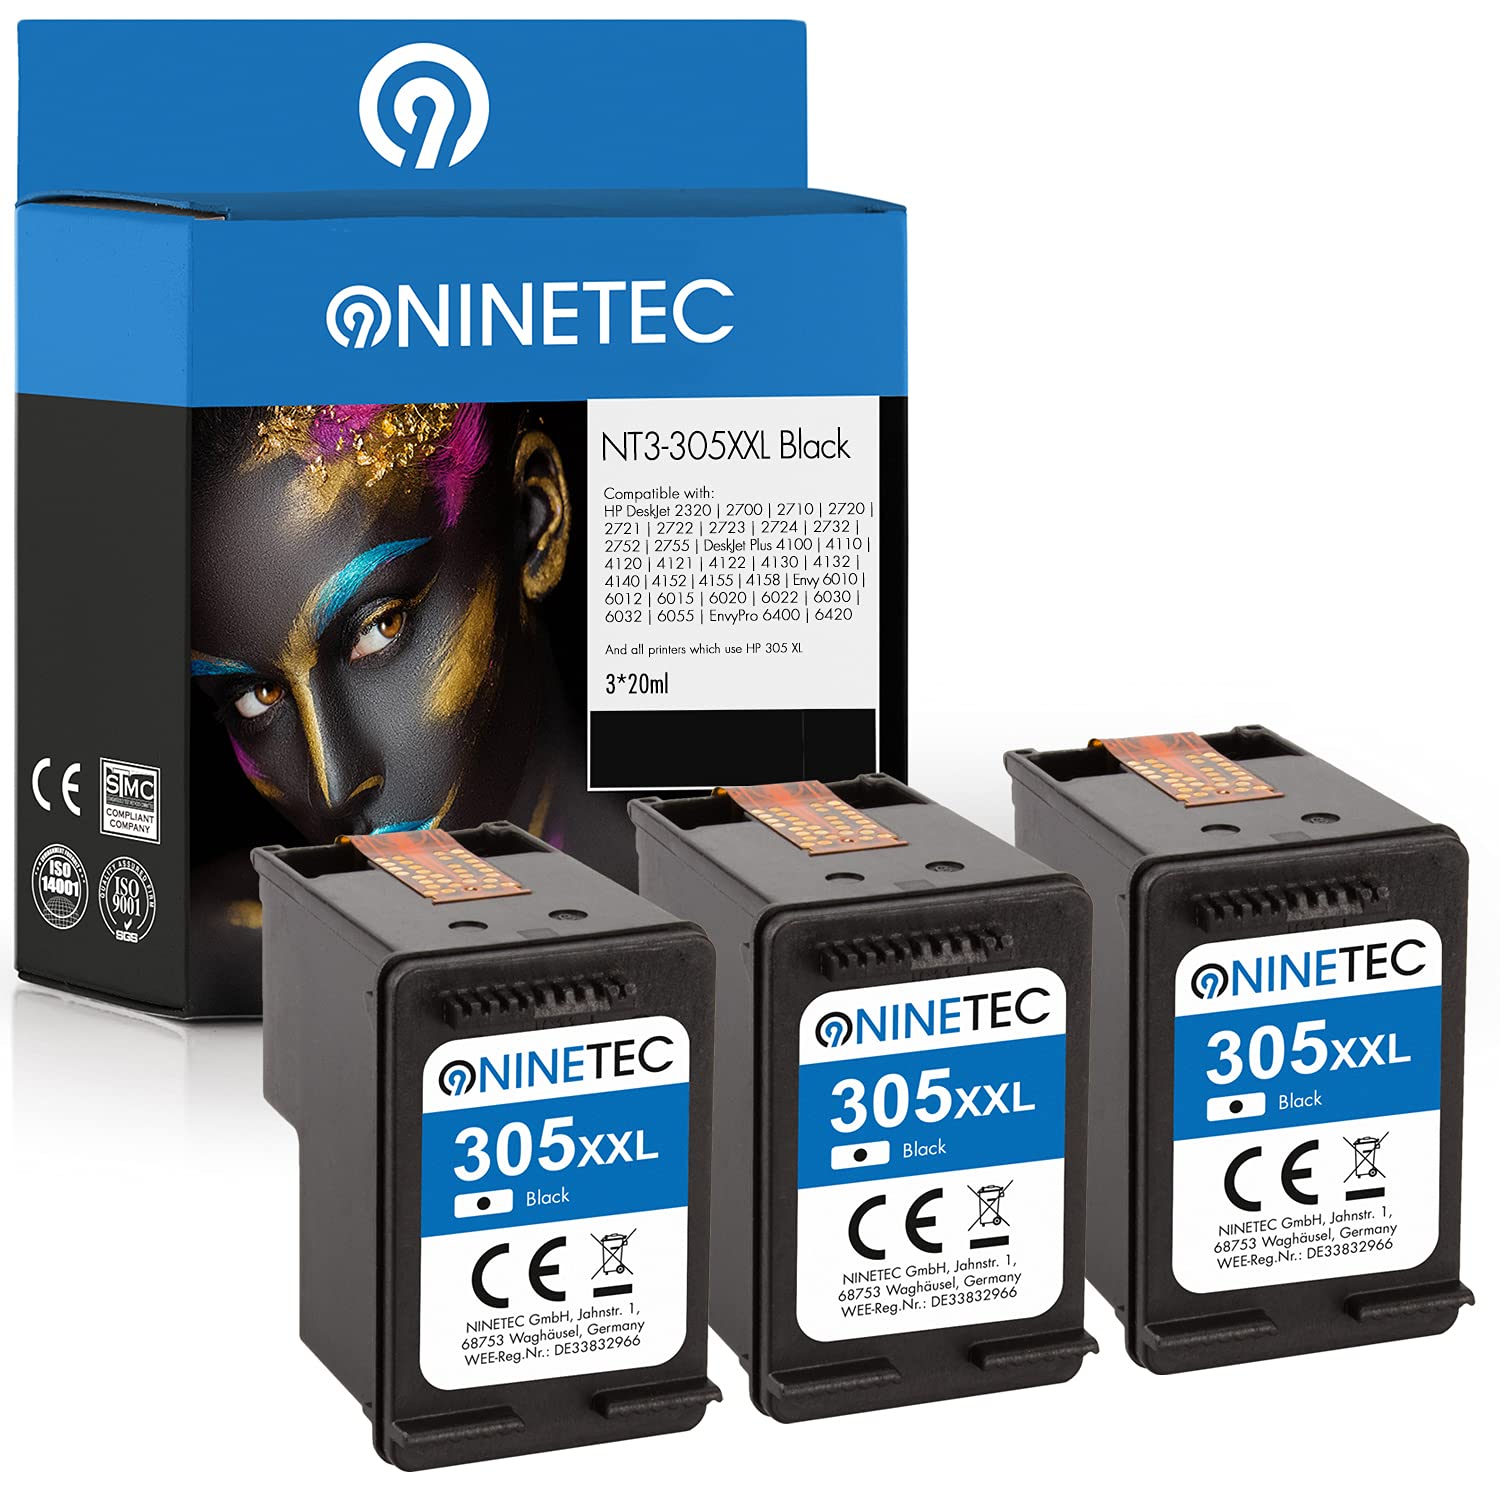 NINETEC EcoLonglife 3 Druckerpatronen kompatibel mit HP 305XL HP 305 XL Black wiederaufbereitet für DeskJet 2720 2721 4120 2700 2710 2752 Envy 6020 6000 6420 6030 6032 6022 Pro Plus (schwarz, 3-Pack)